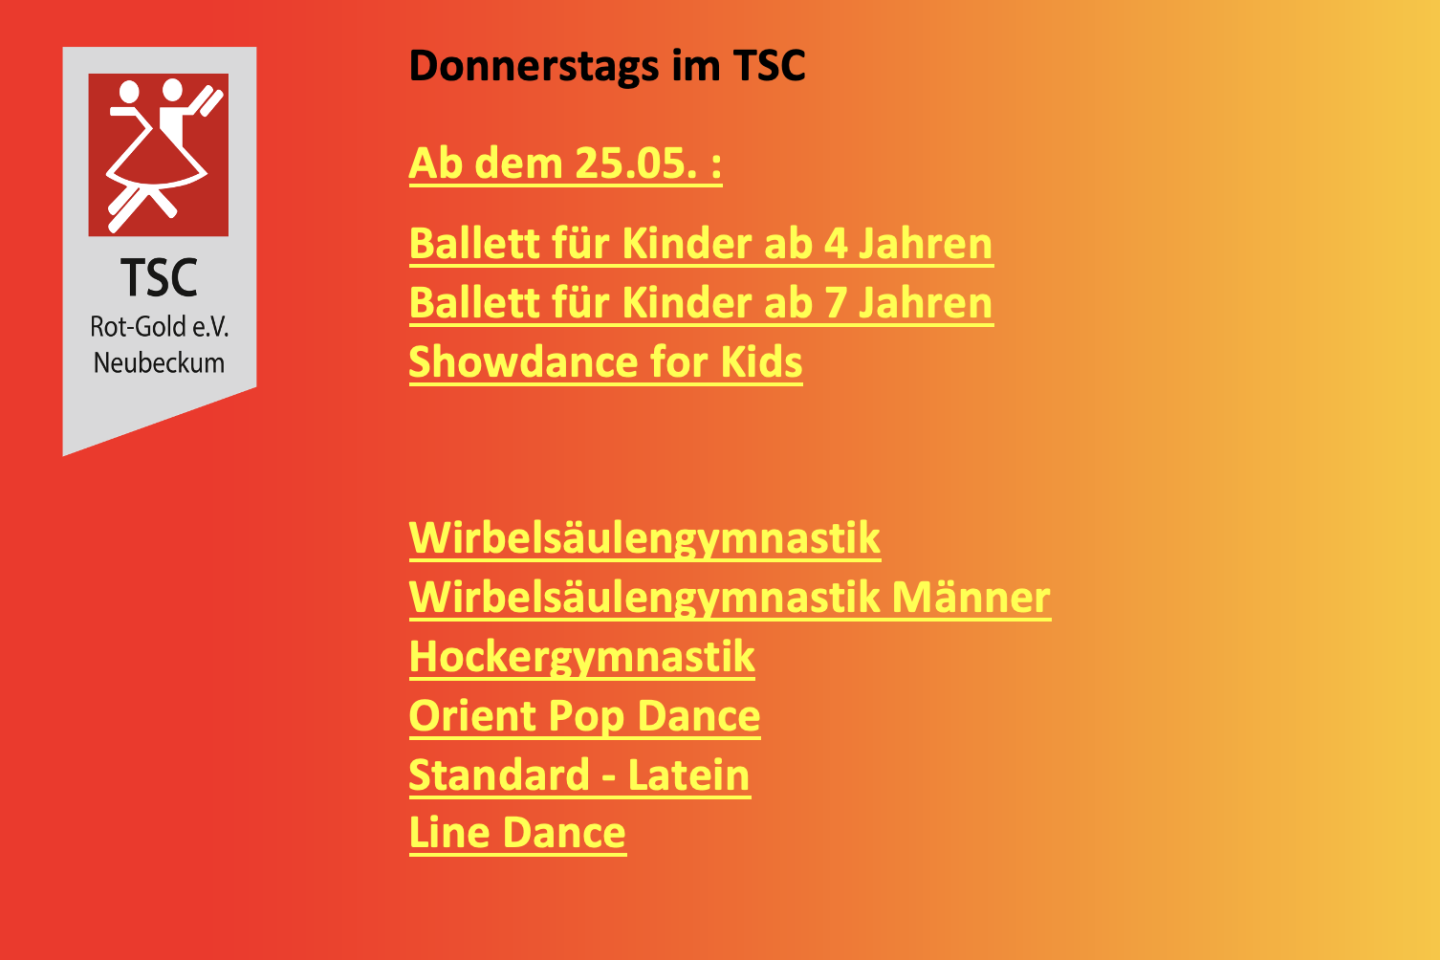 Ballett | Showdance | Wirbelsäulengymnastik | Hockergymnastik | Orient Pop Dance | Standard-Latein | Line Dance